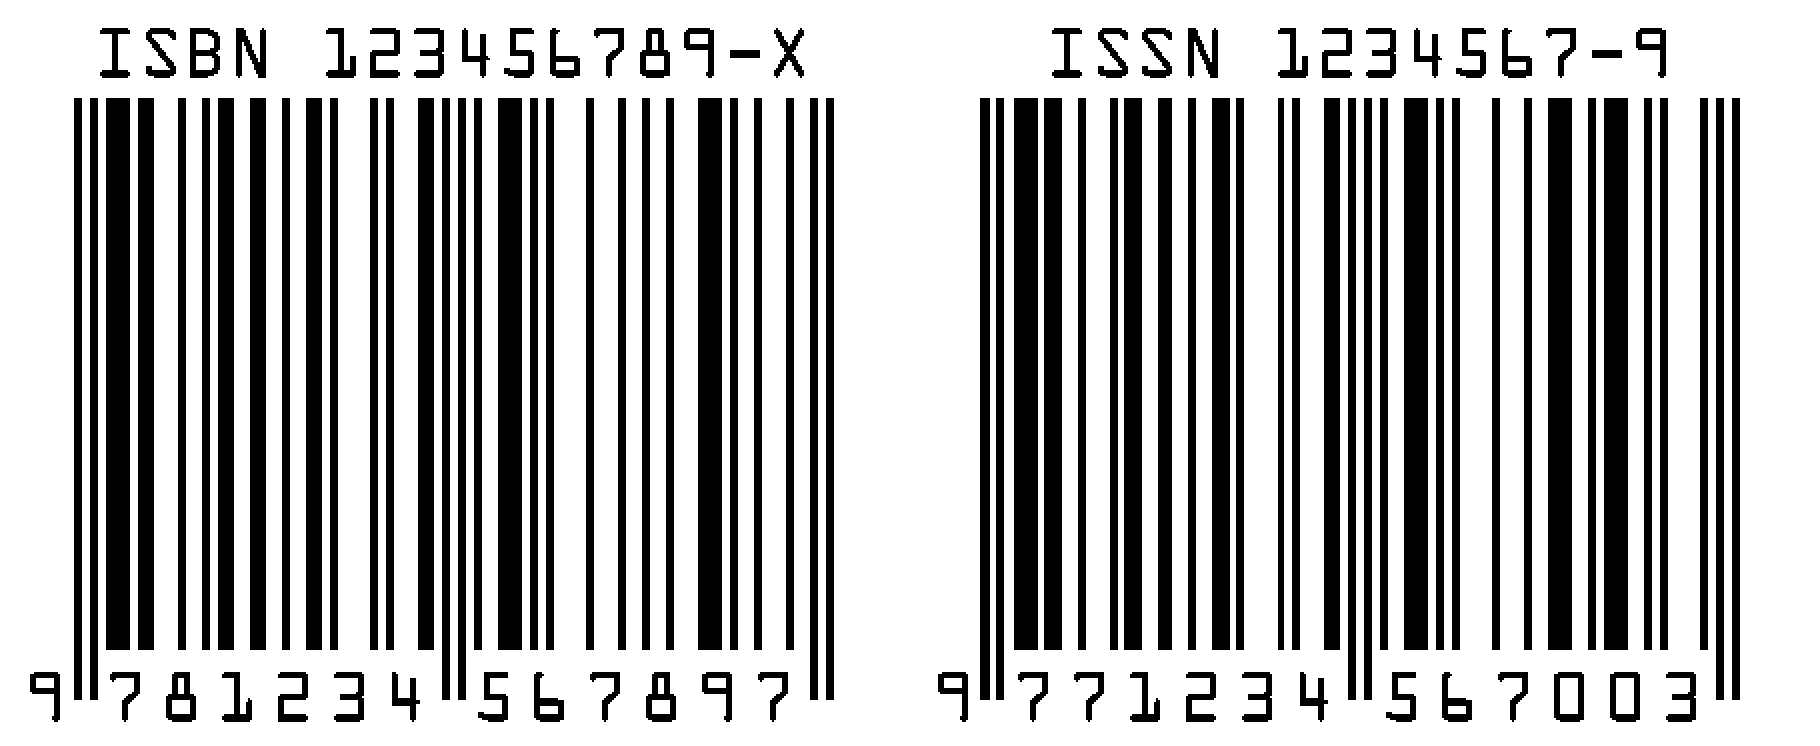 ISBN ISSN